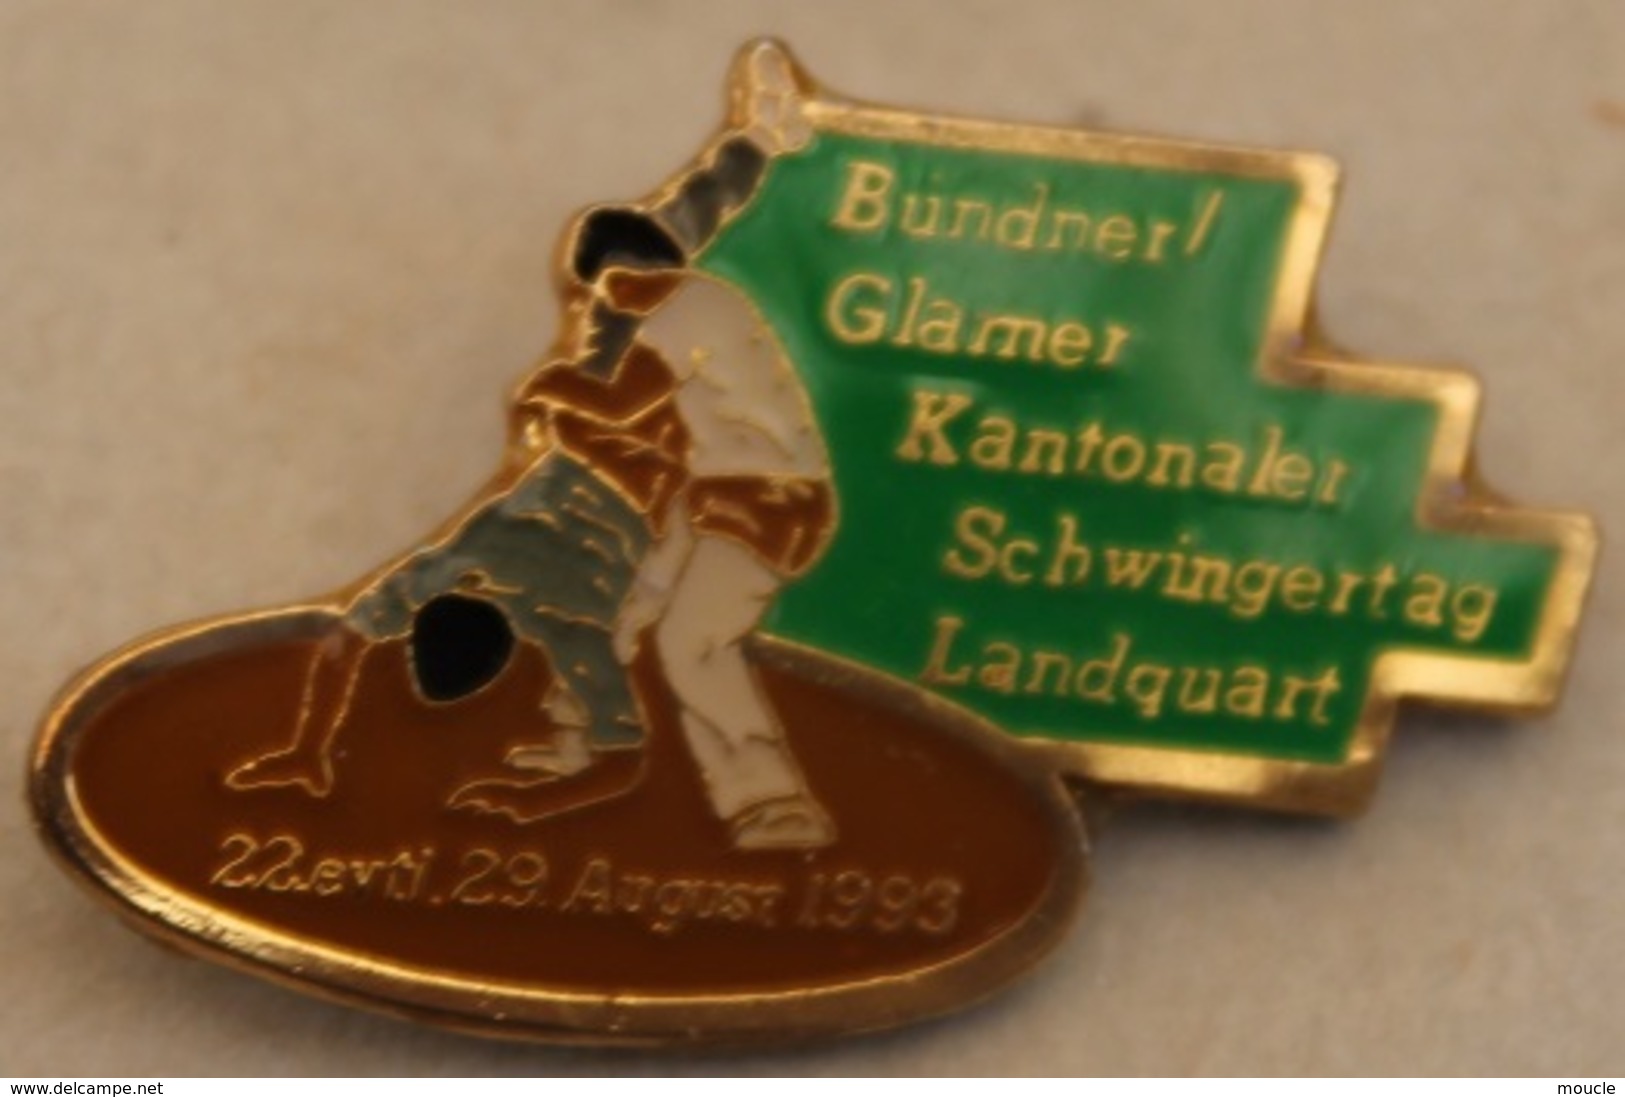 LUTTE SUISSE - BUNDNER GLANER KANTONALER SCHWINGERTAG LANDQUART - 1993 - LUTTEURS - SCHWEIZ - SWITZERLAND -    (20) - Ringen